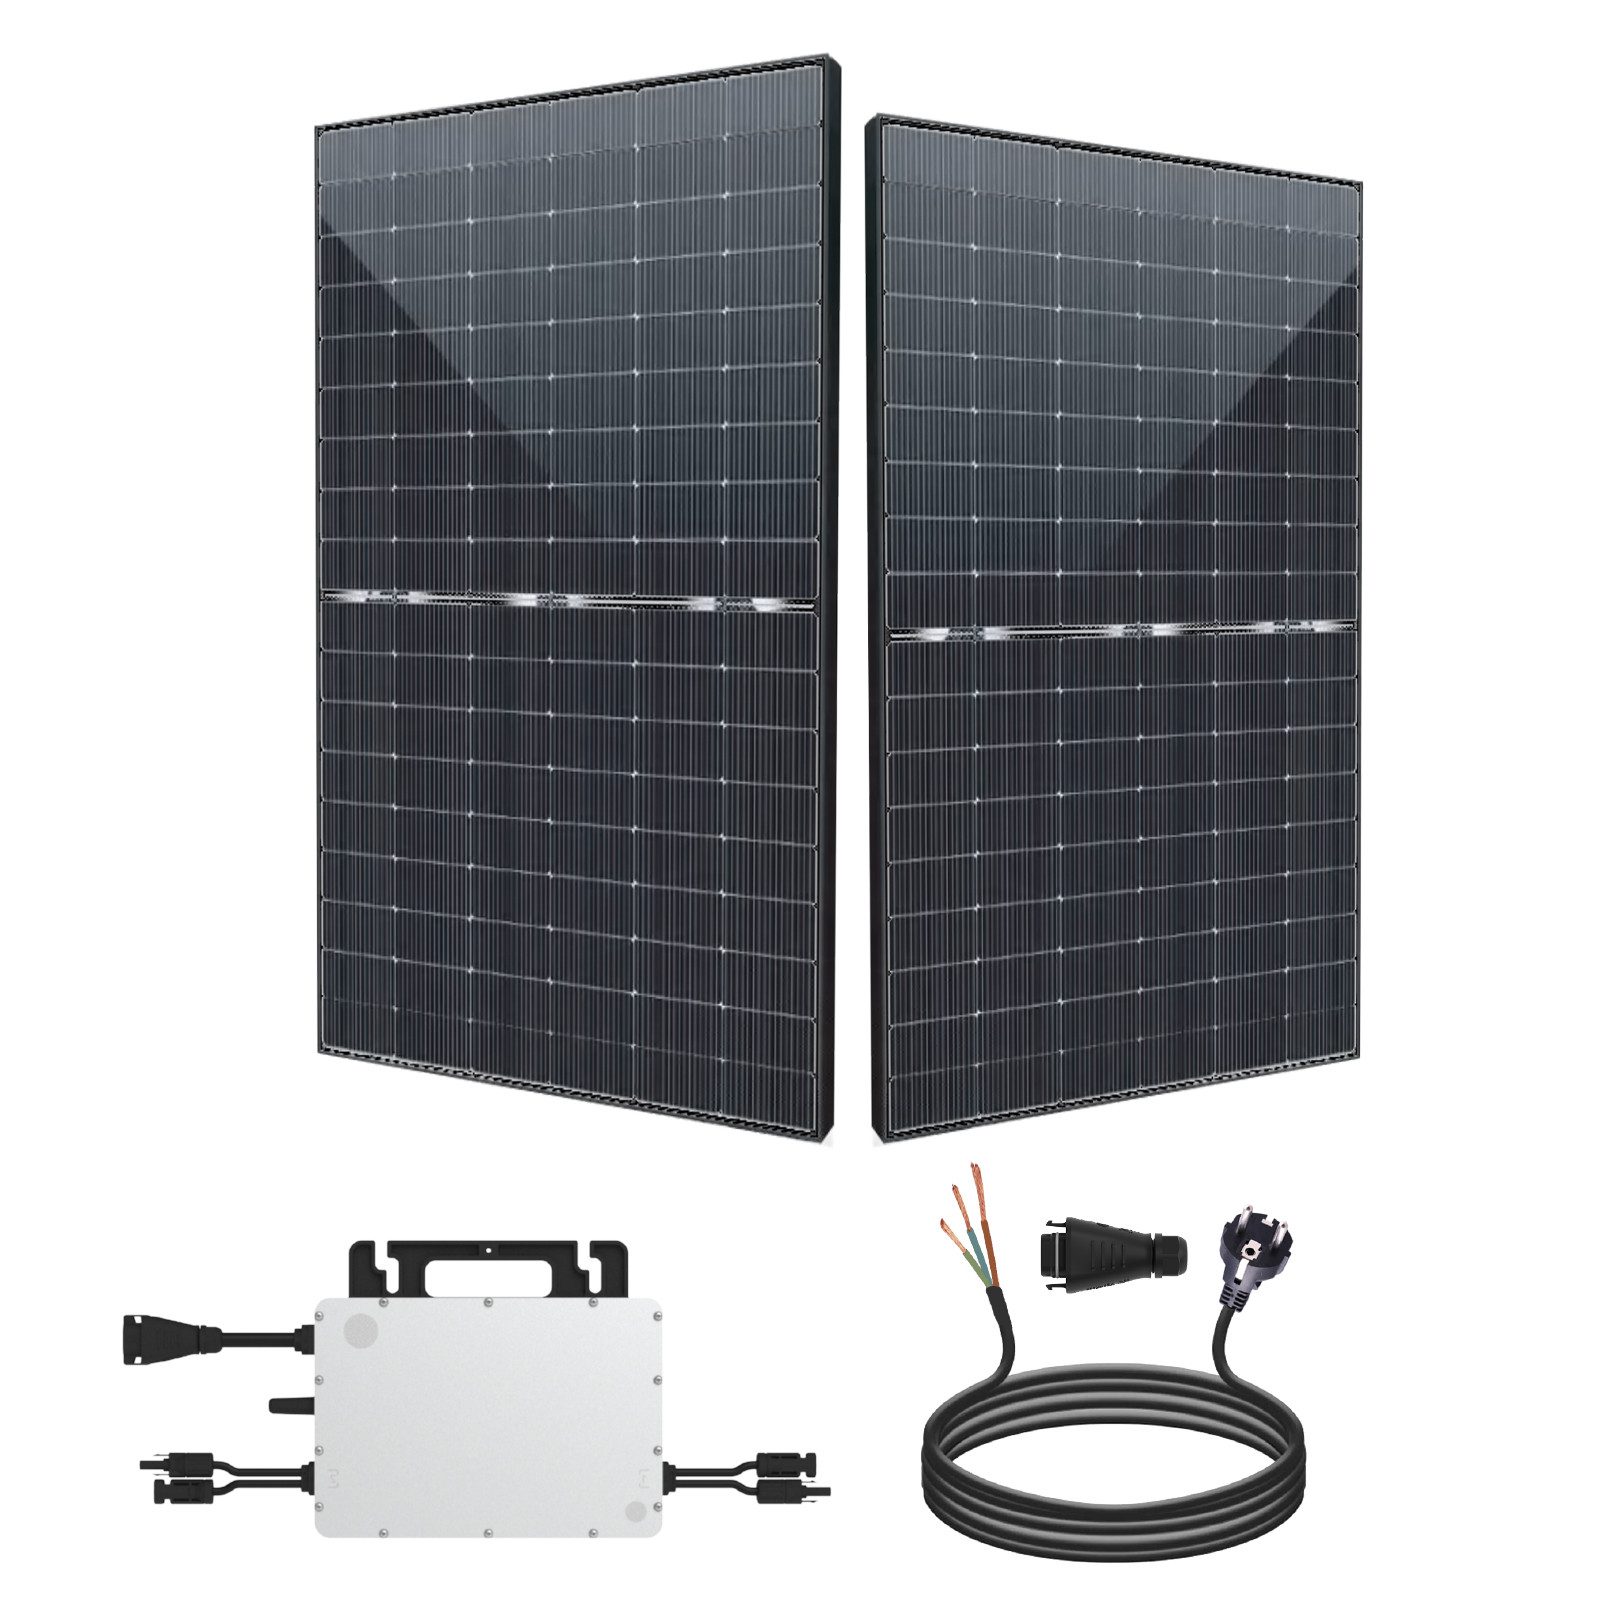 EPP.Solar Solaranlage 880W/800W Balkonkraftwerk inkl Sunpro 440W Bifazial Solarmodule, Monokristalline, (Plug & Play Komplettset mit Hoymiles HMS-800-2T Upgradefähiger von 600W auf 800W WLAN Mikrowechselrichter mit 10m Kabel)